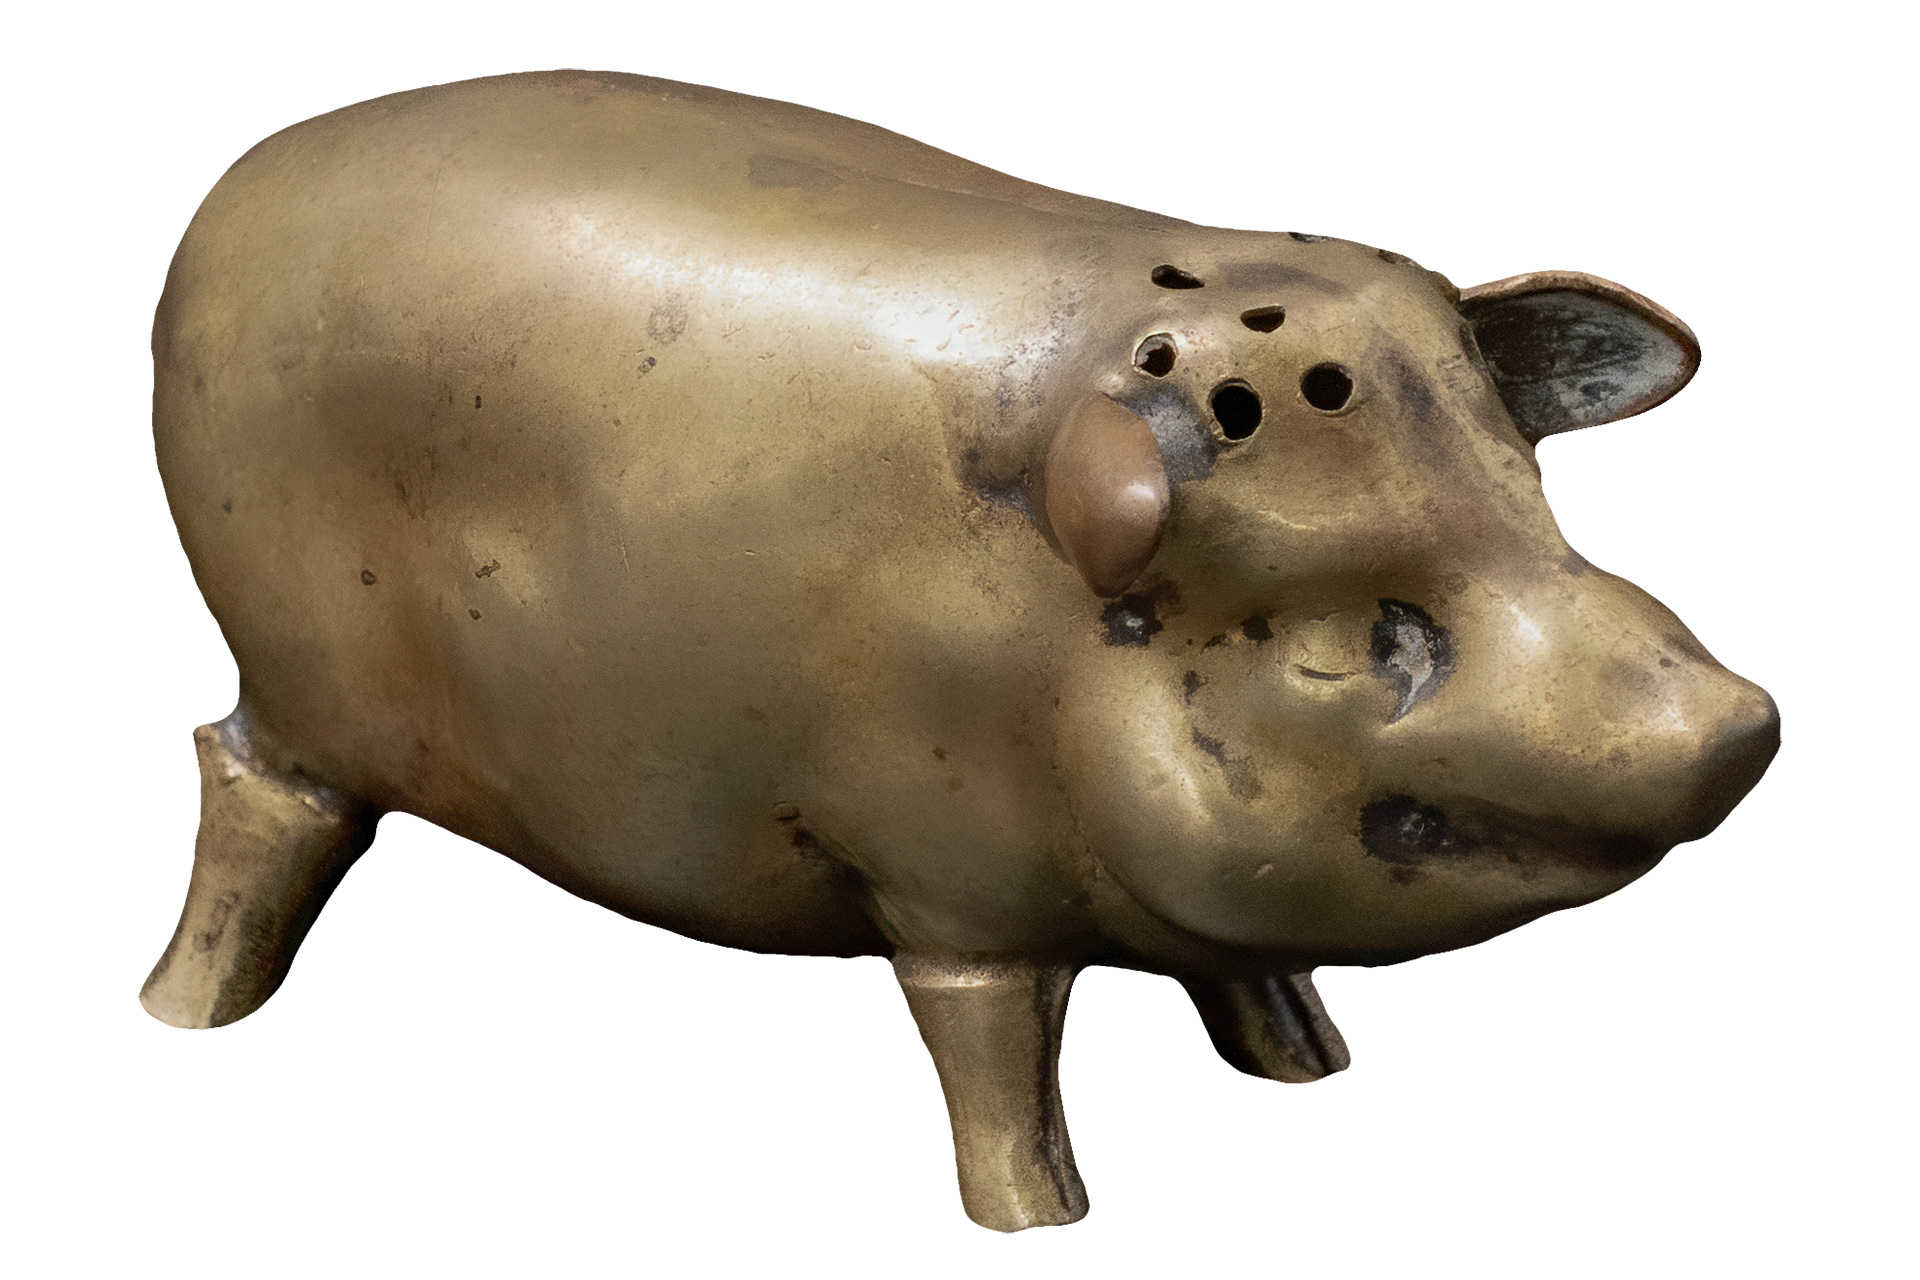 Pig-shaped Saltshaker